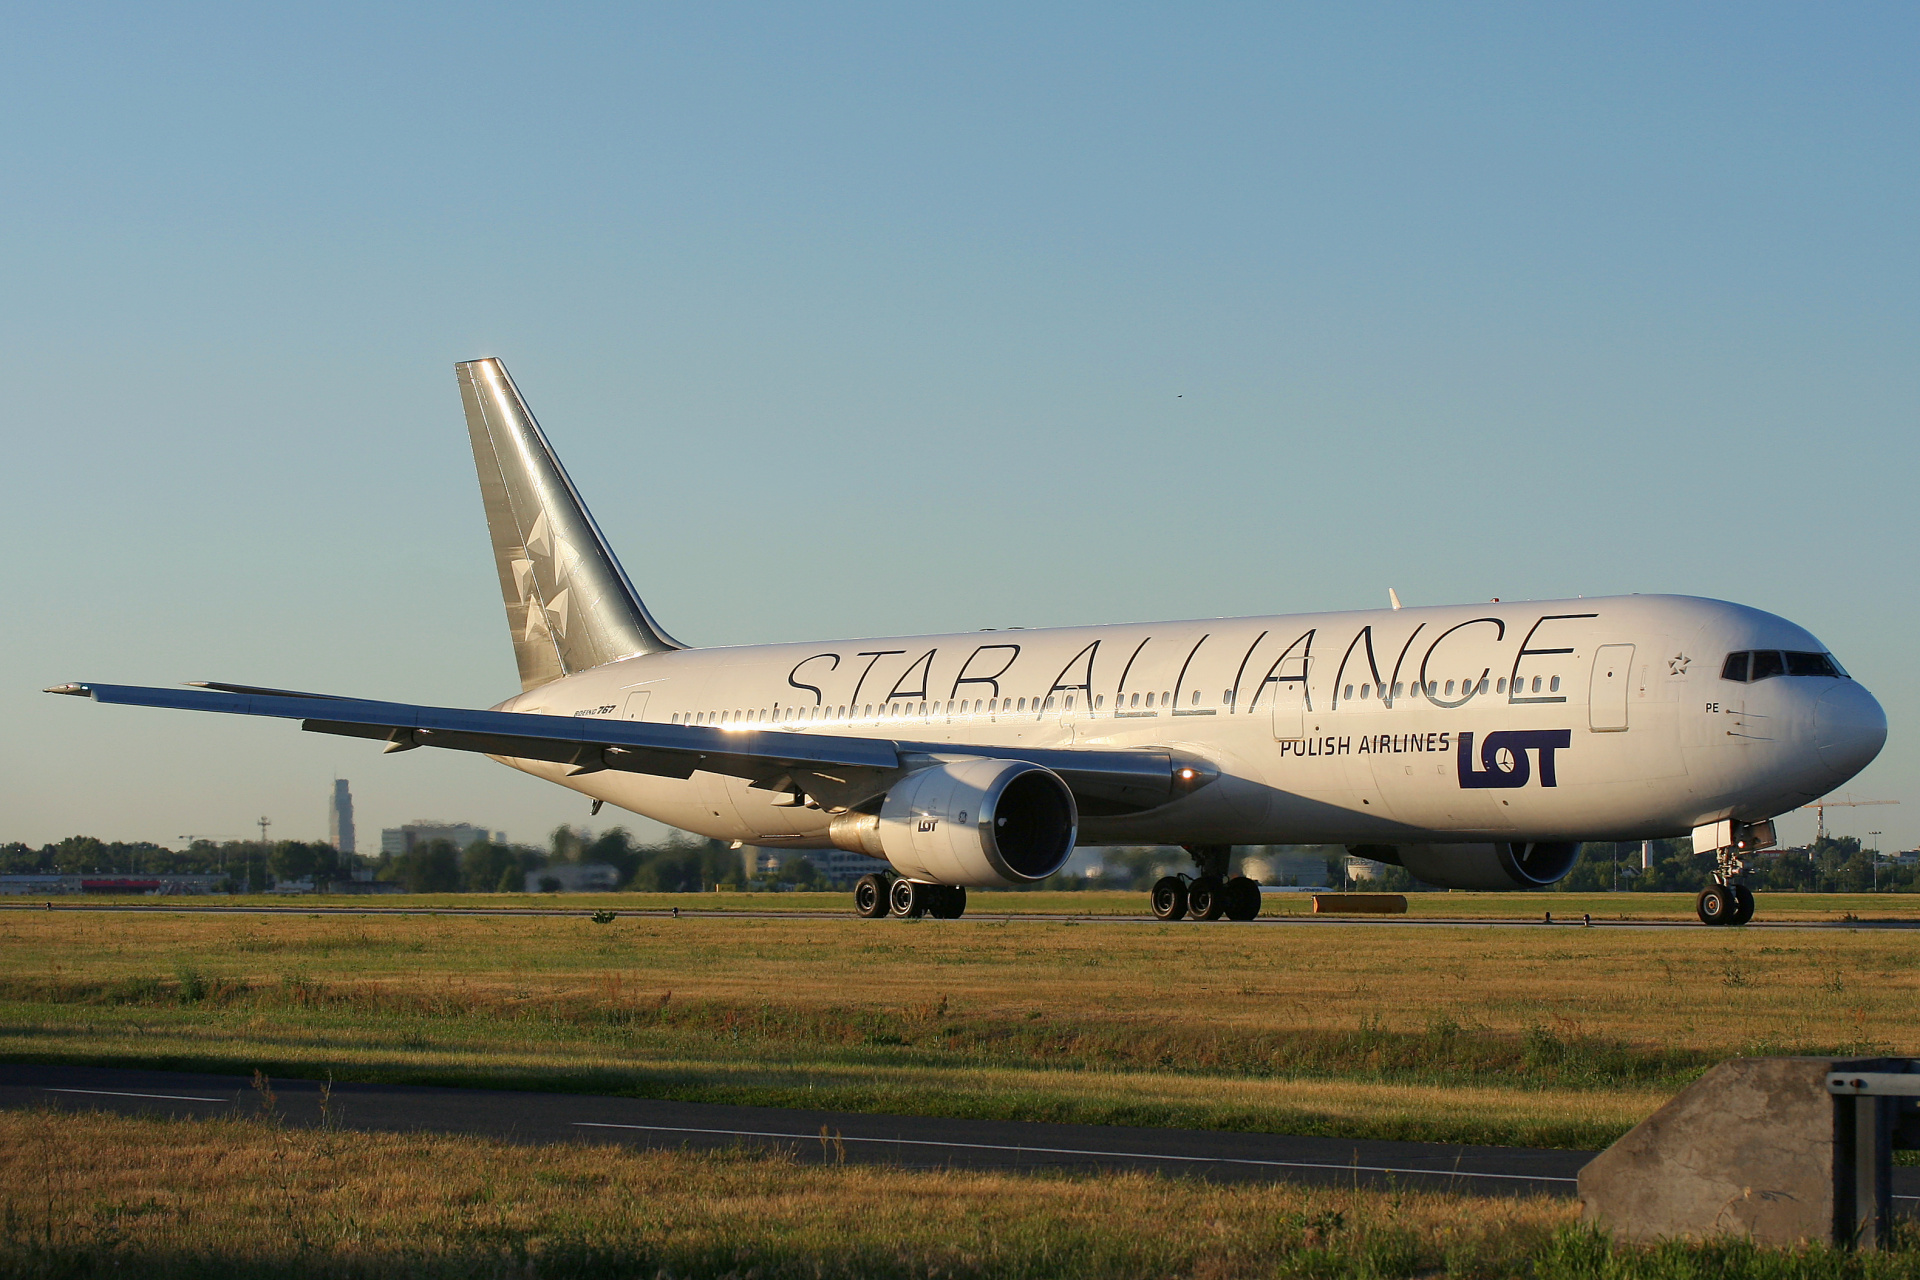 SP-LPE (malowanie Star Alliance) (Samoloty » Spotting na EPWA » Boeing 767-300 » Polskie Linie Lotnicze LOT)